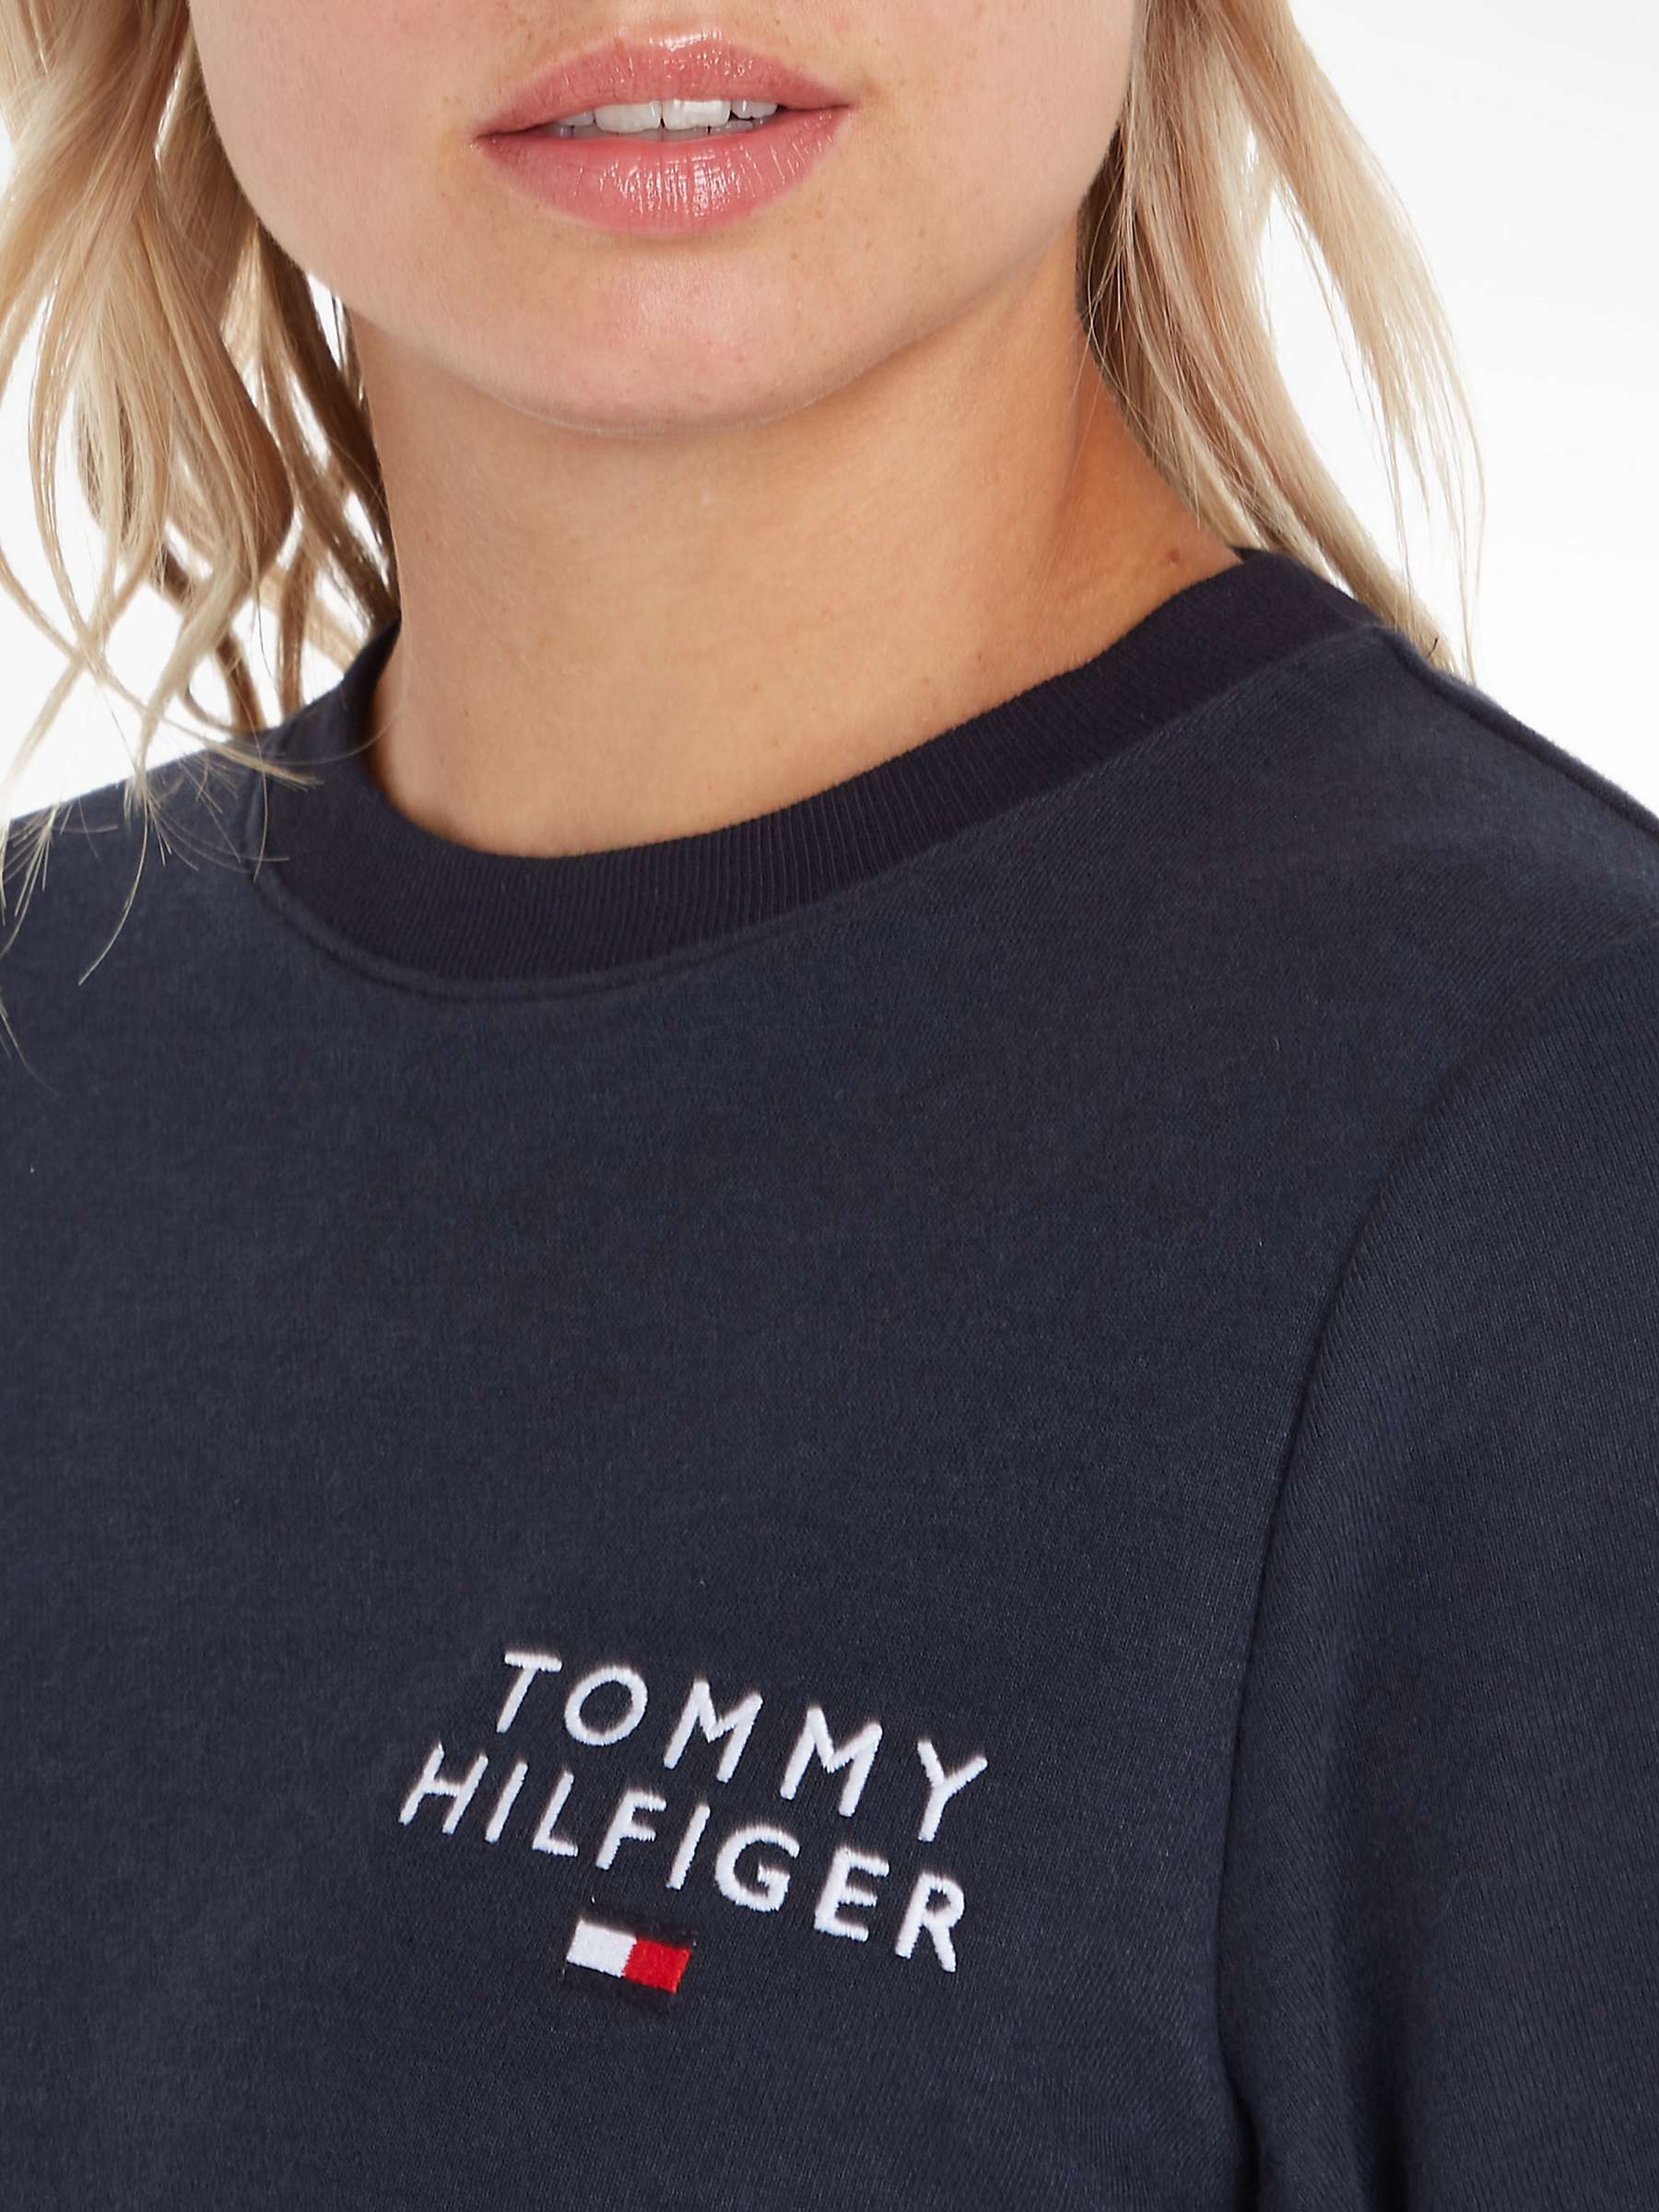 Buy Tommy Hilfiger Logo Lounge Sweatshirt, Desert Sky Online at johnlewis.com